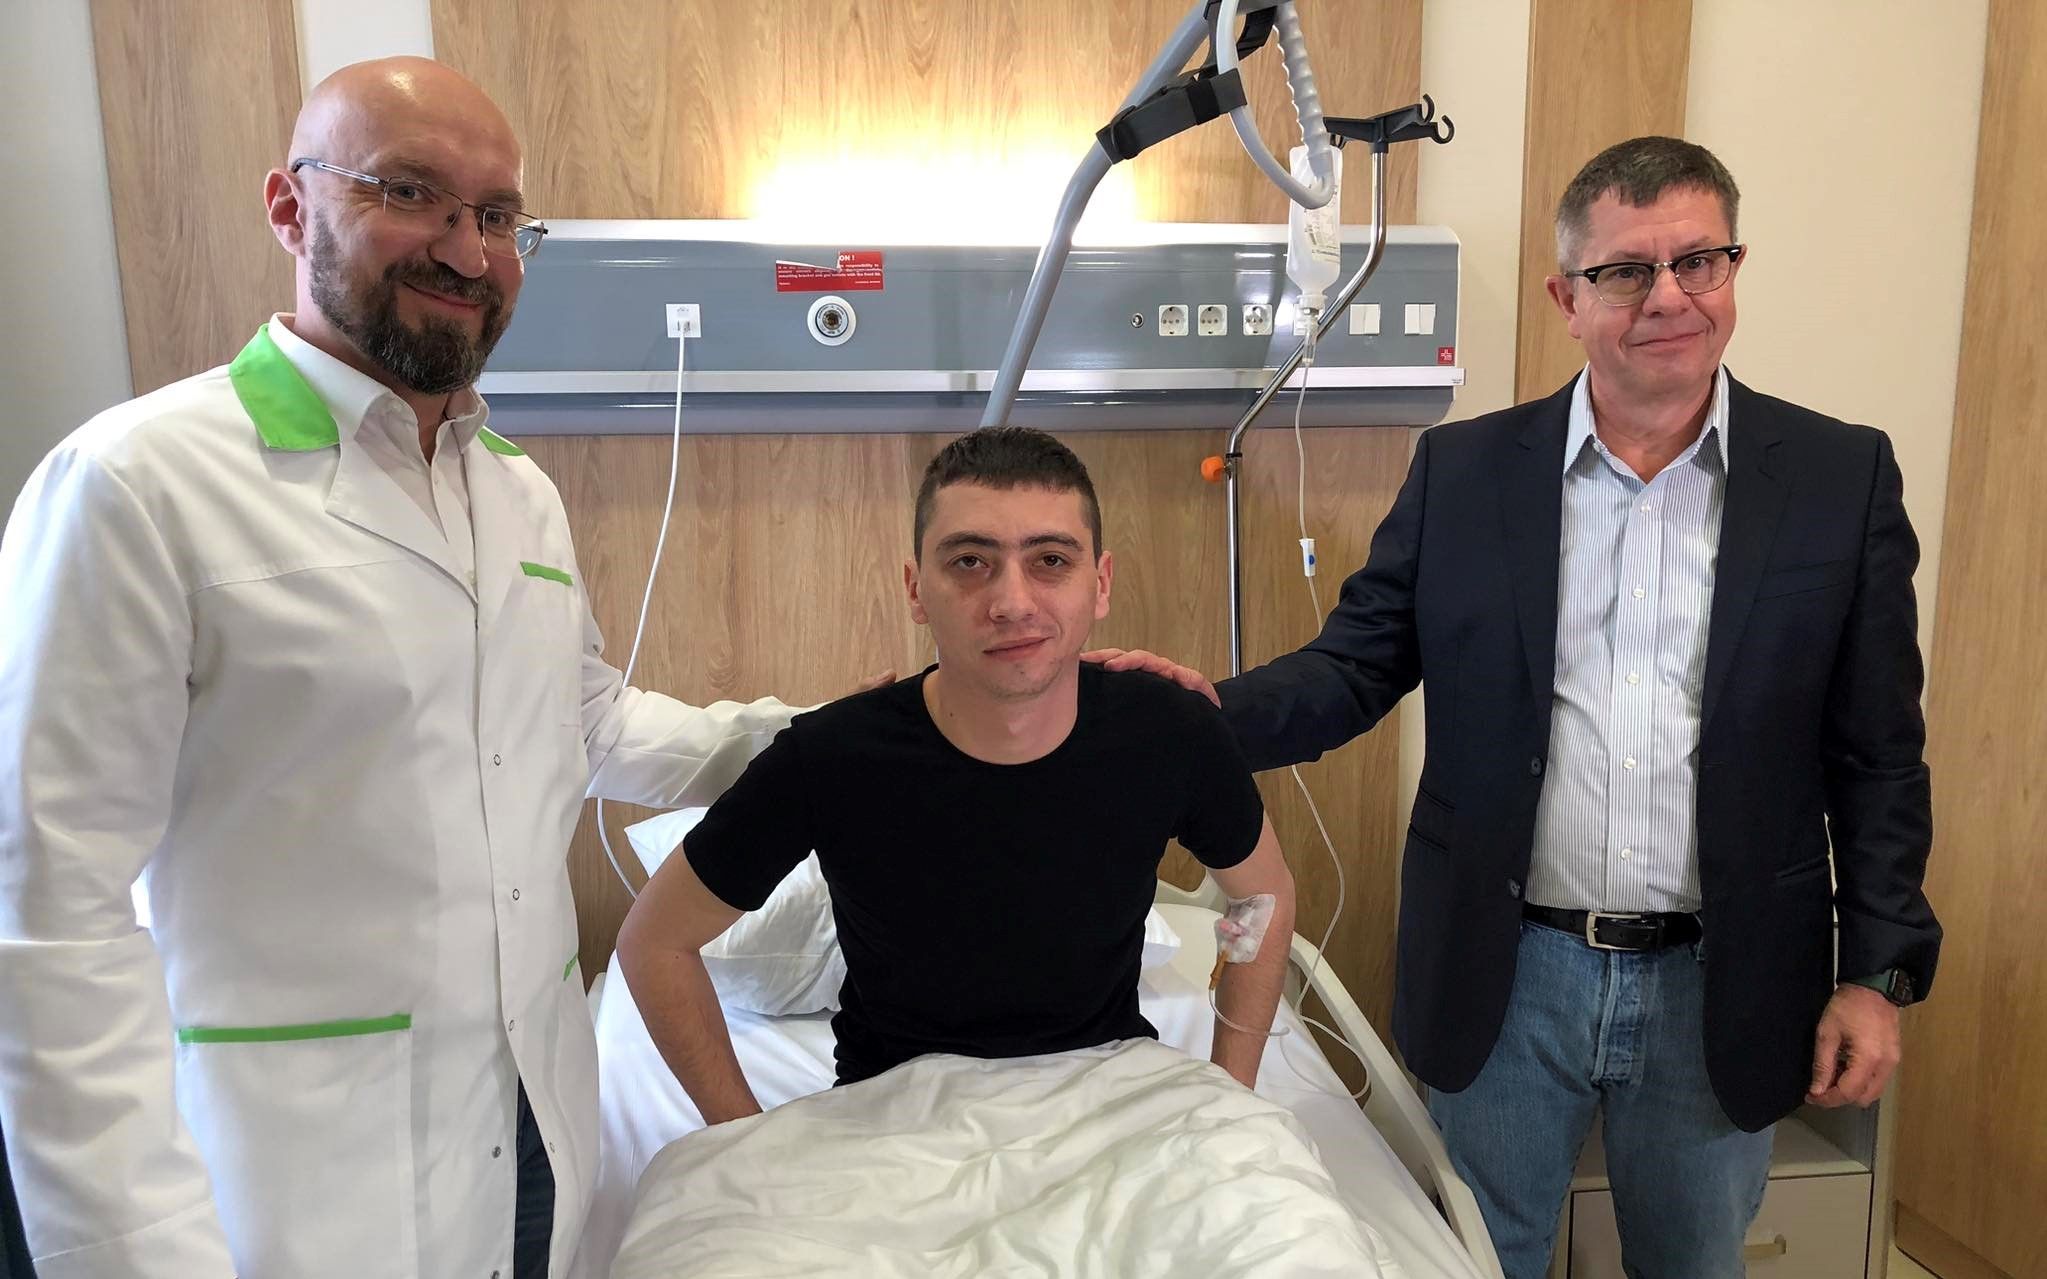 Остеоинтегративное протезирование: известный шведский хирург провел инновационные операции в Украине - Здоровье 24